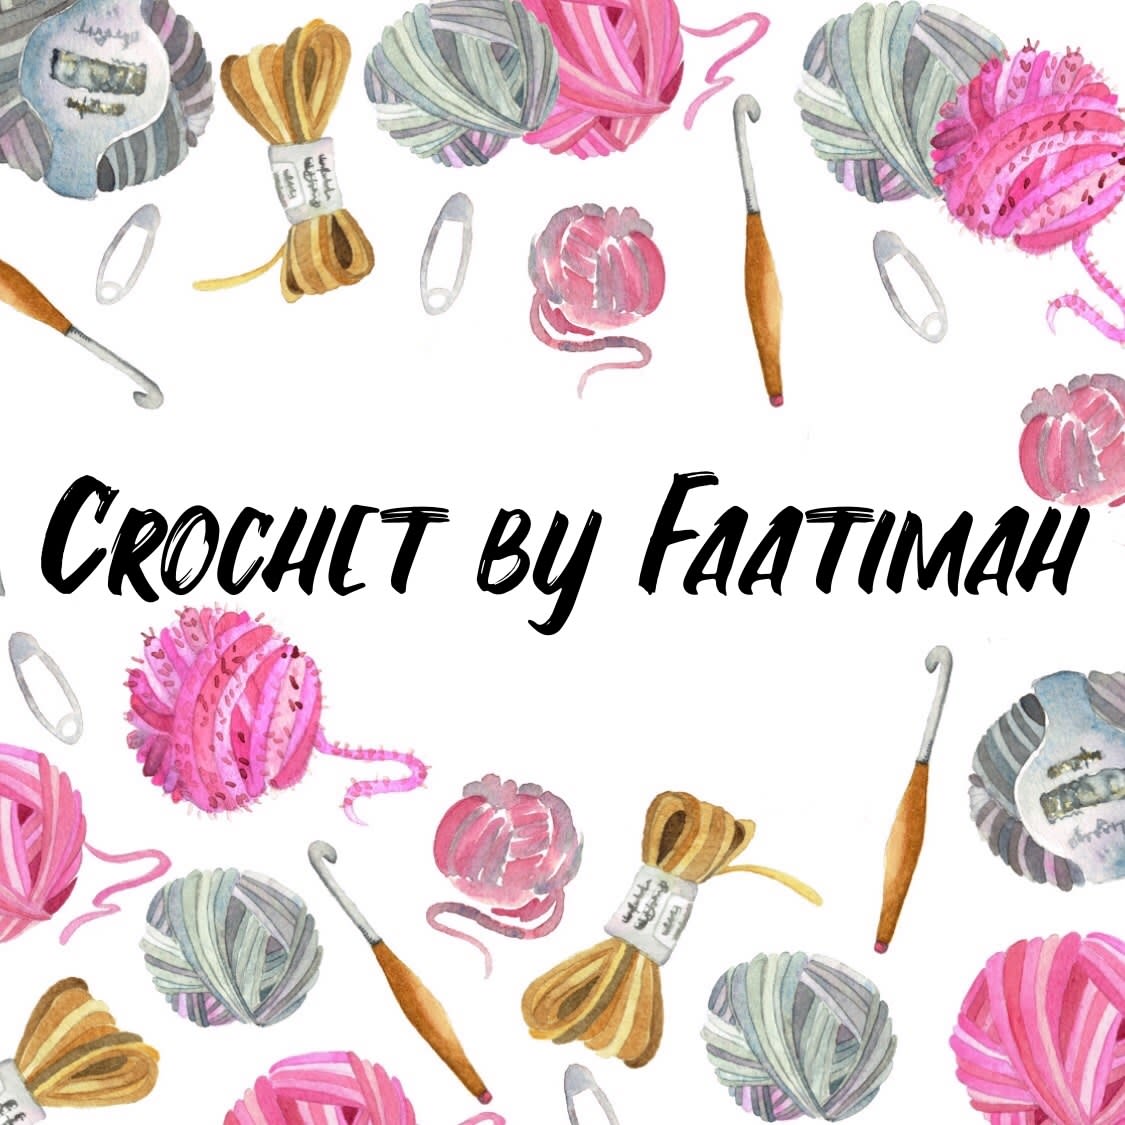 Crochet by Faatimah